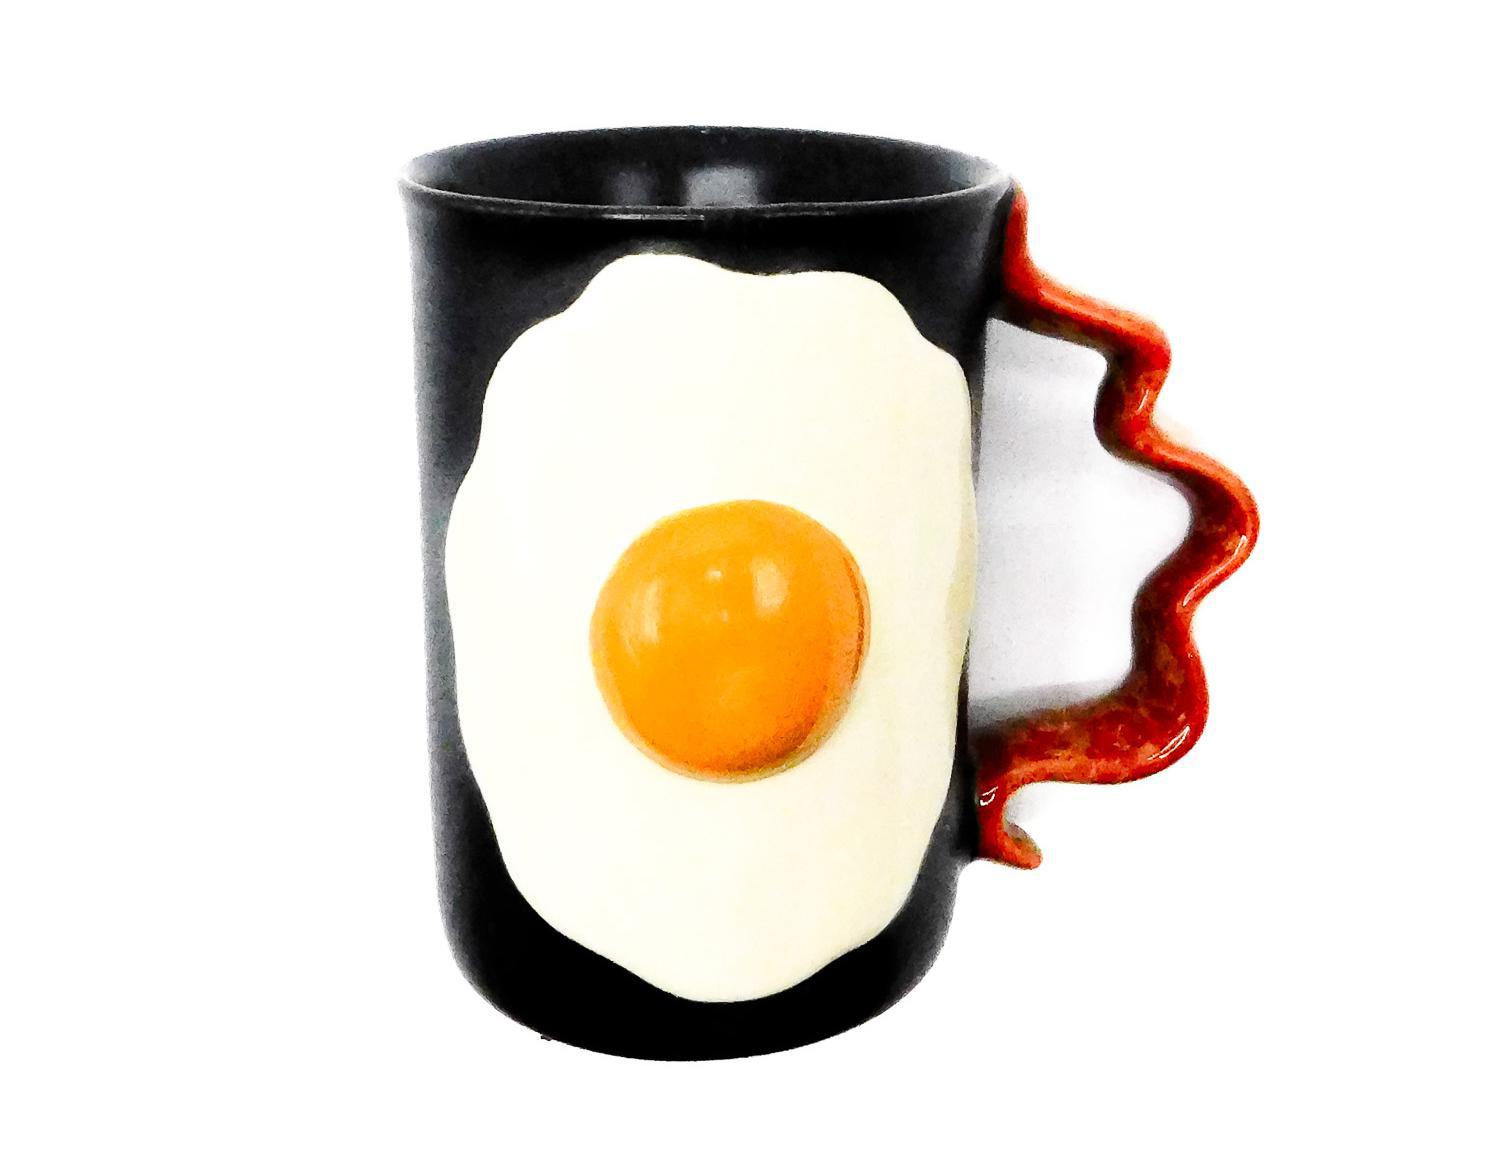  egg and bacon shaped ceramic mug